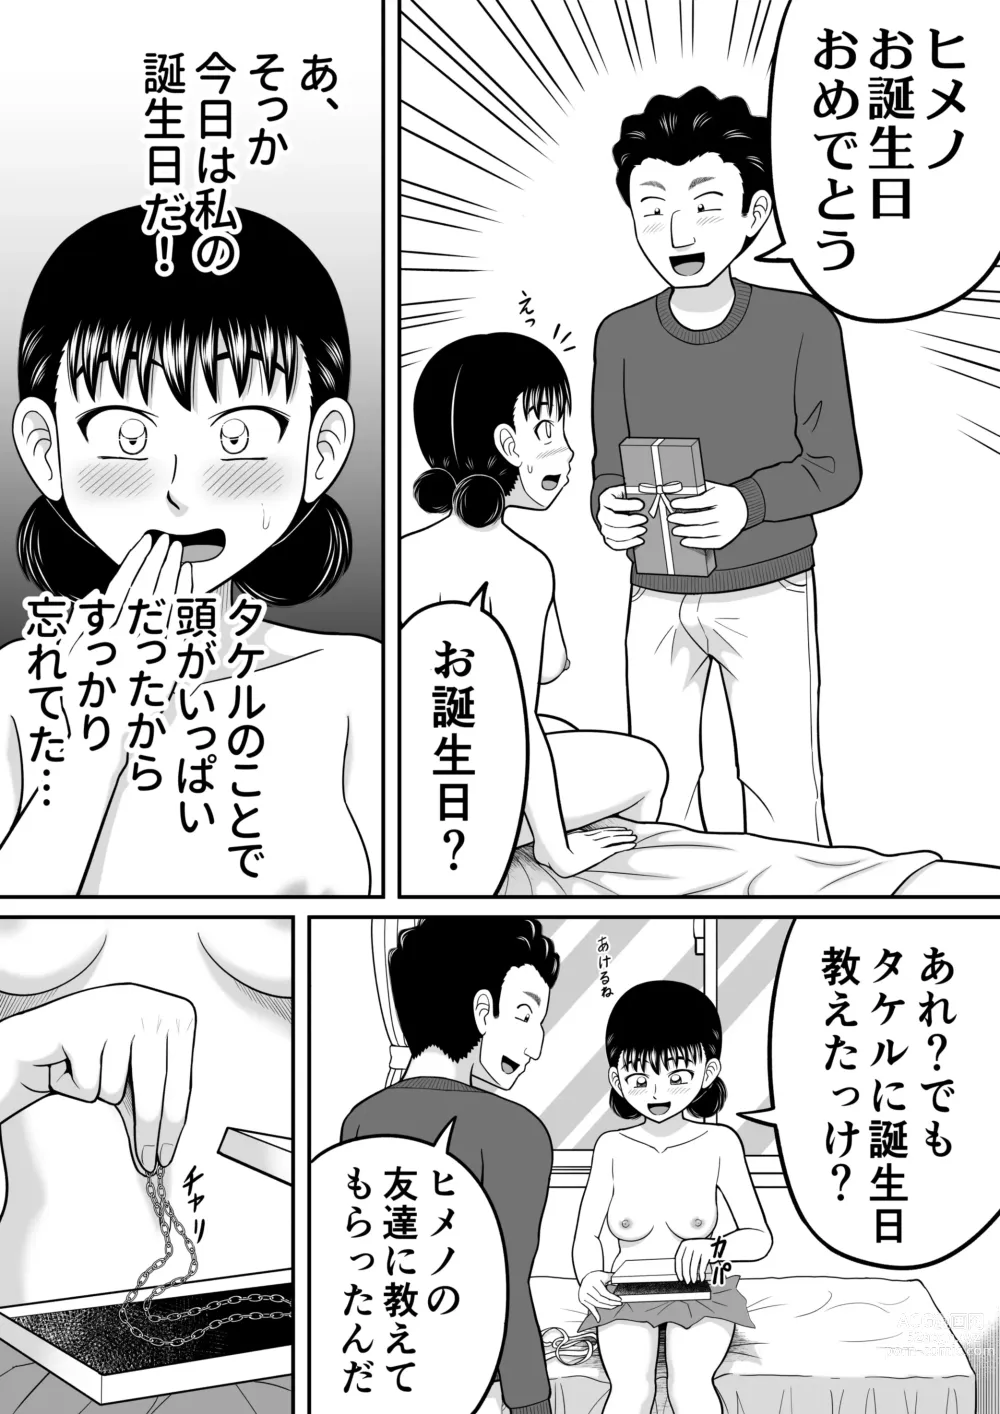 Page 53 of doujinshi Zenra Shoujo 2